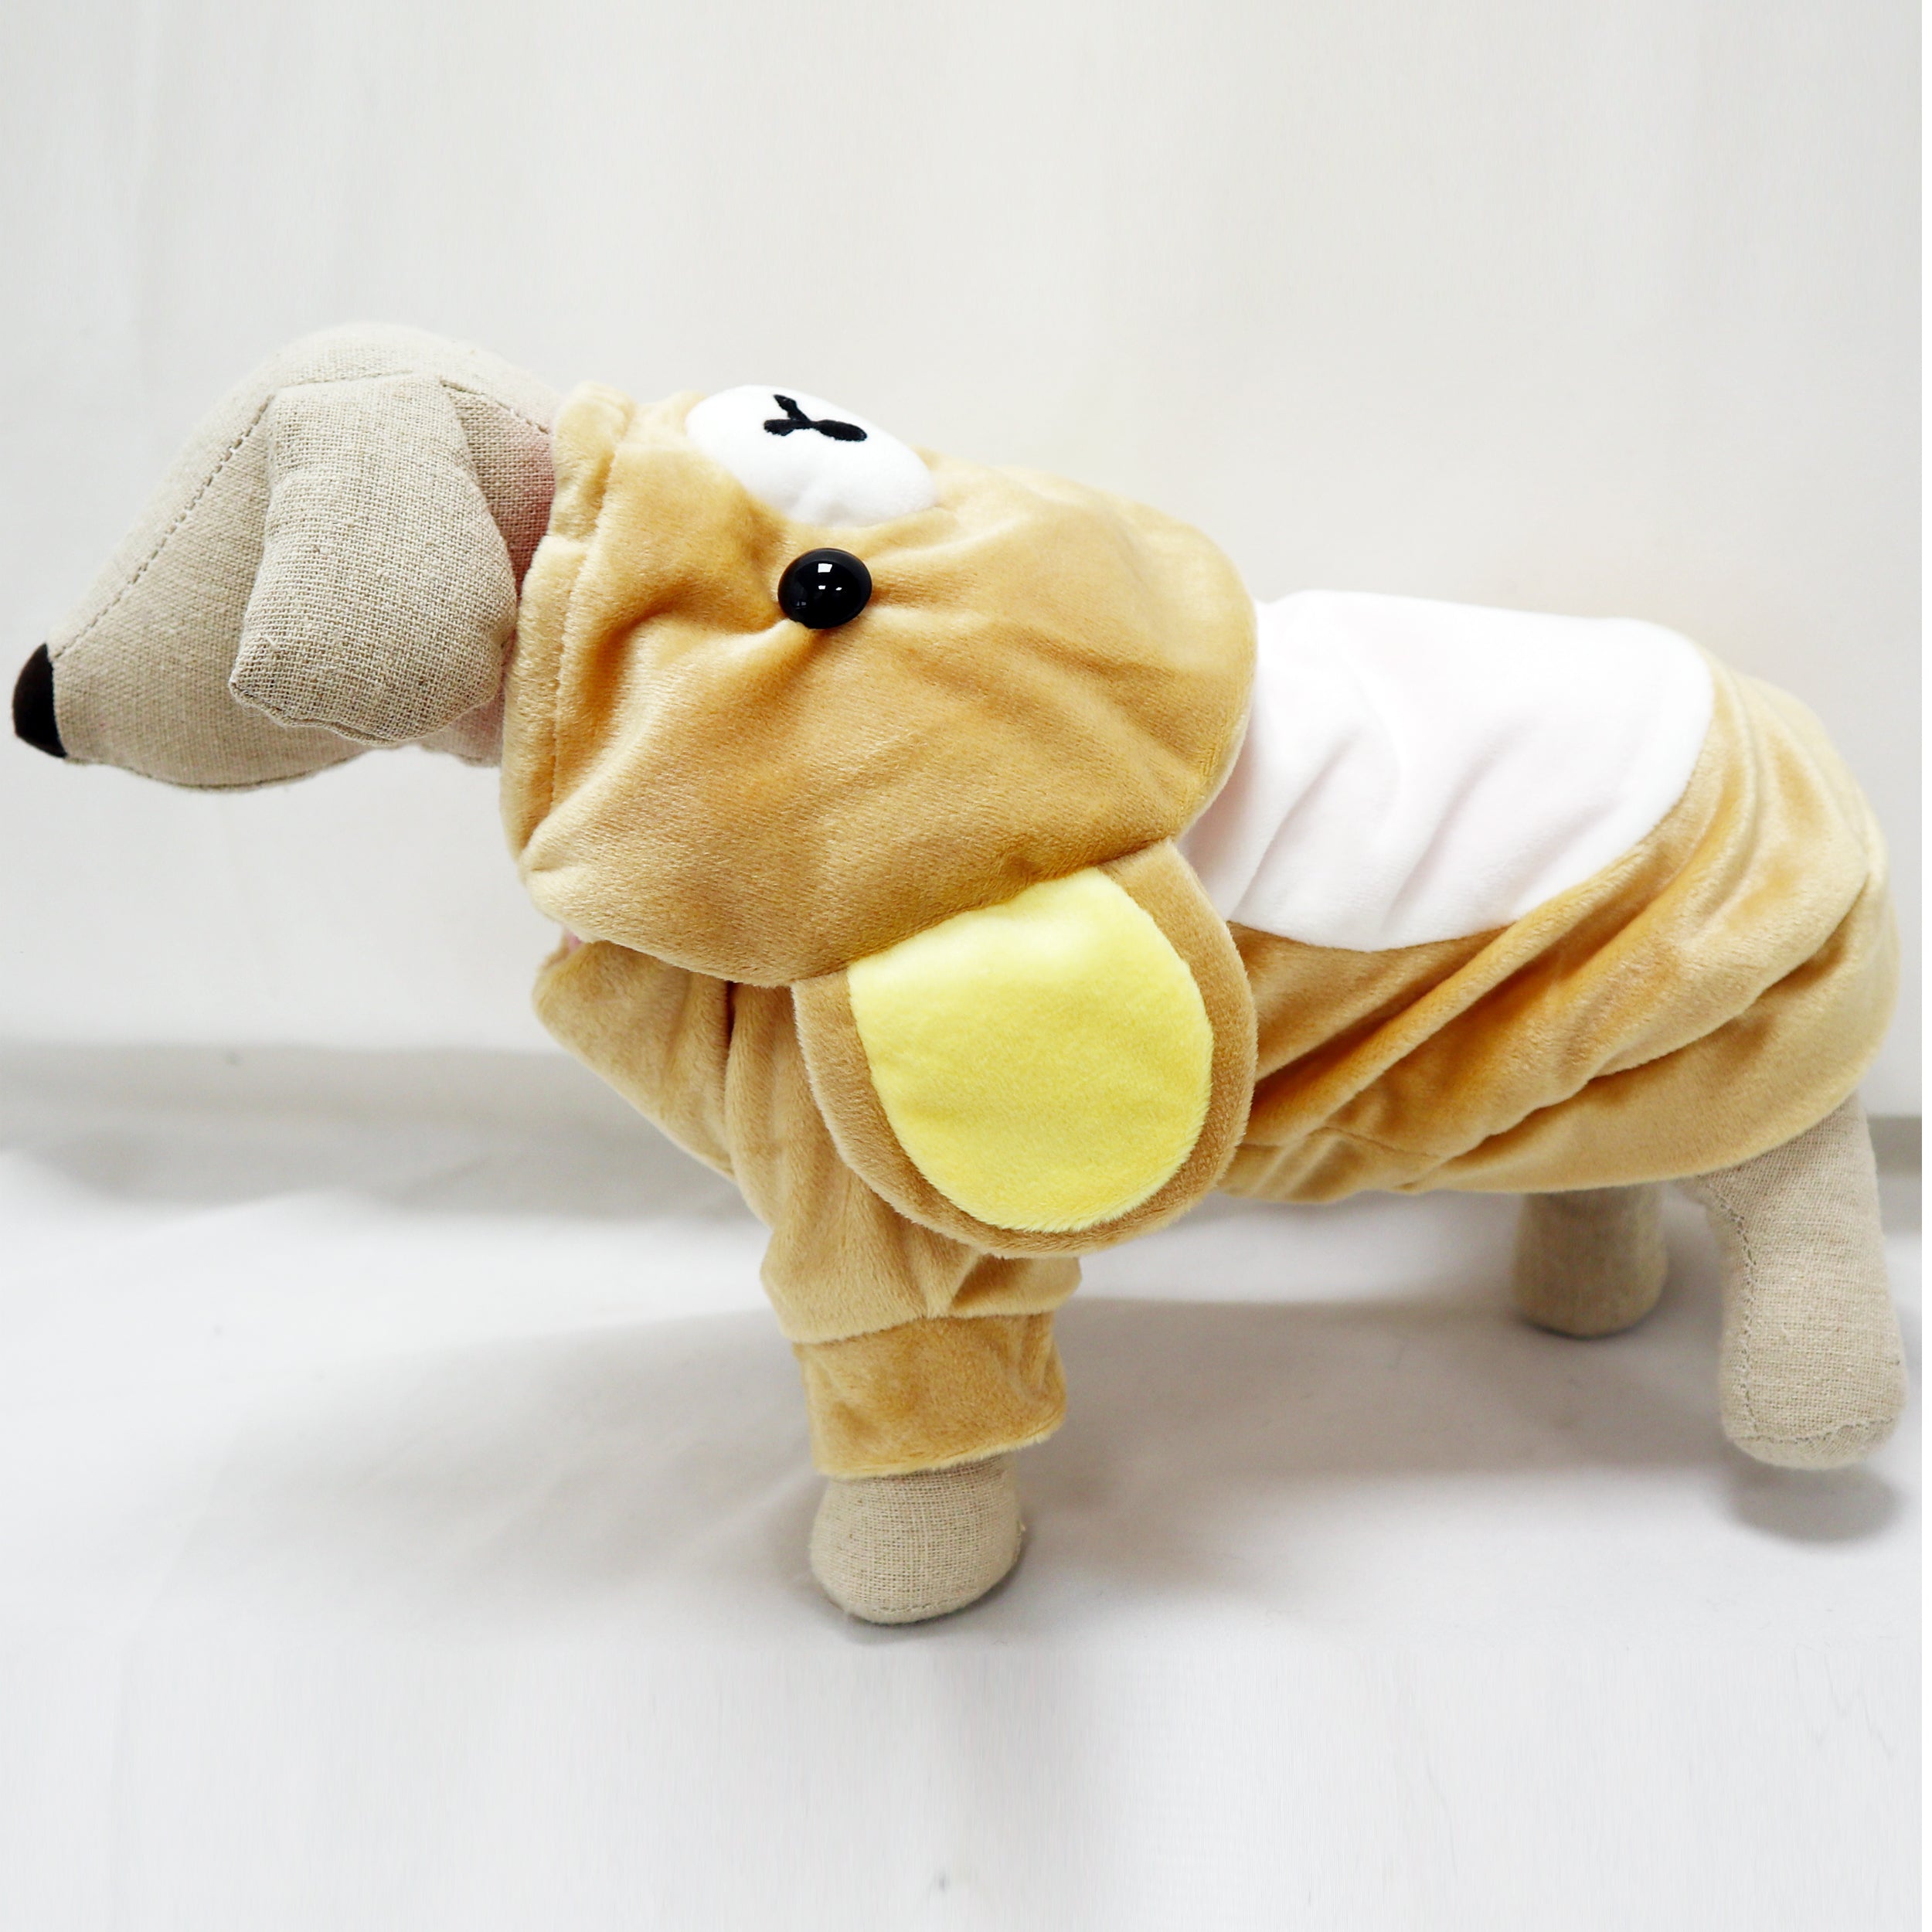 [Apparel] Rilakkuma & Korilakkuma Cute Bear Sweater Costume for Small Dogs & Cats